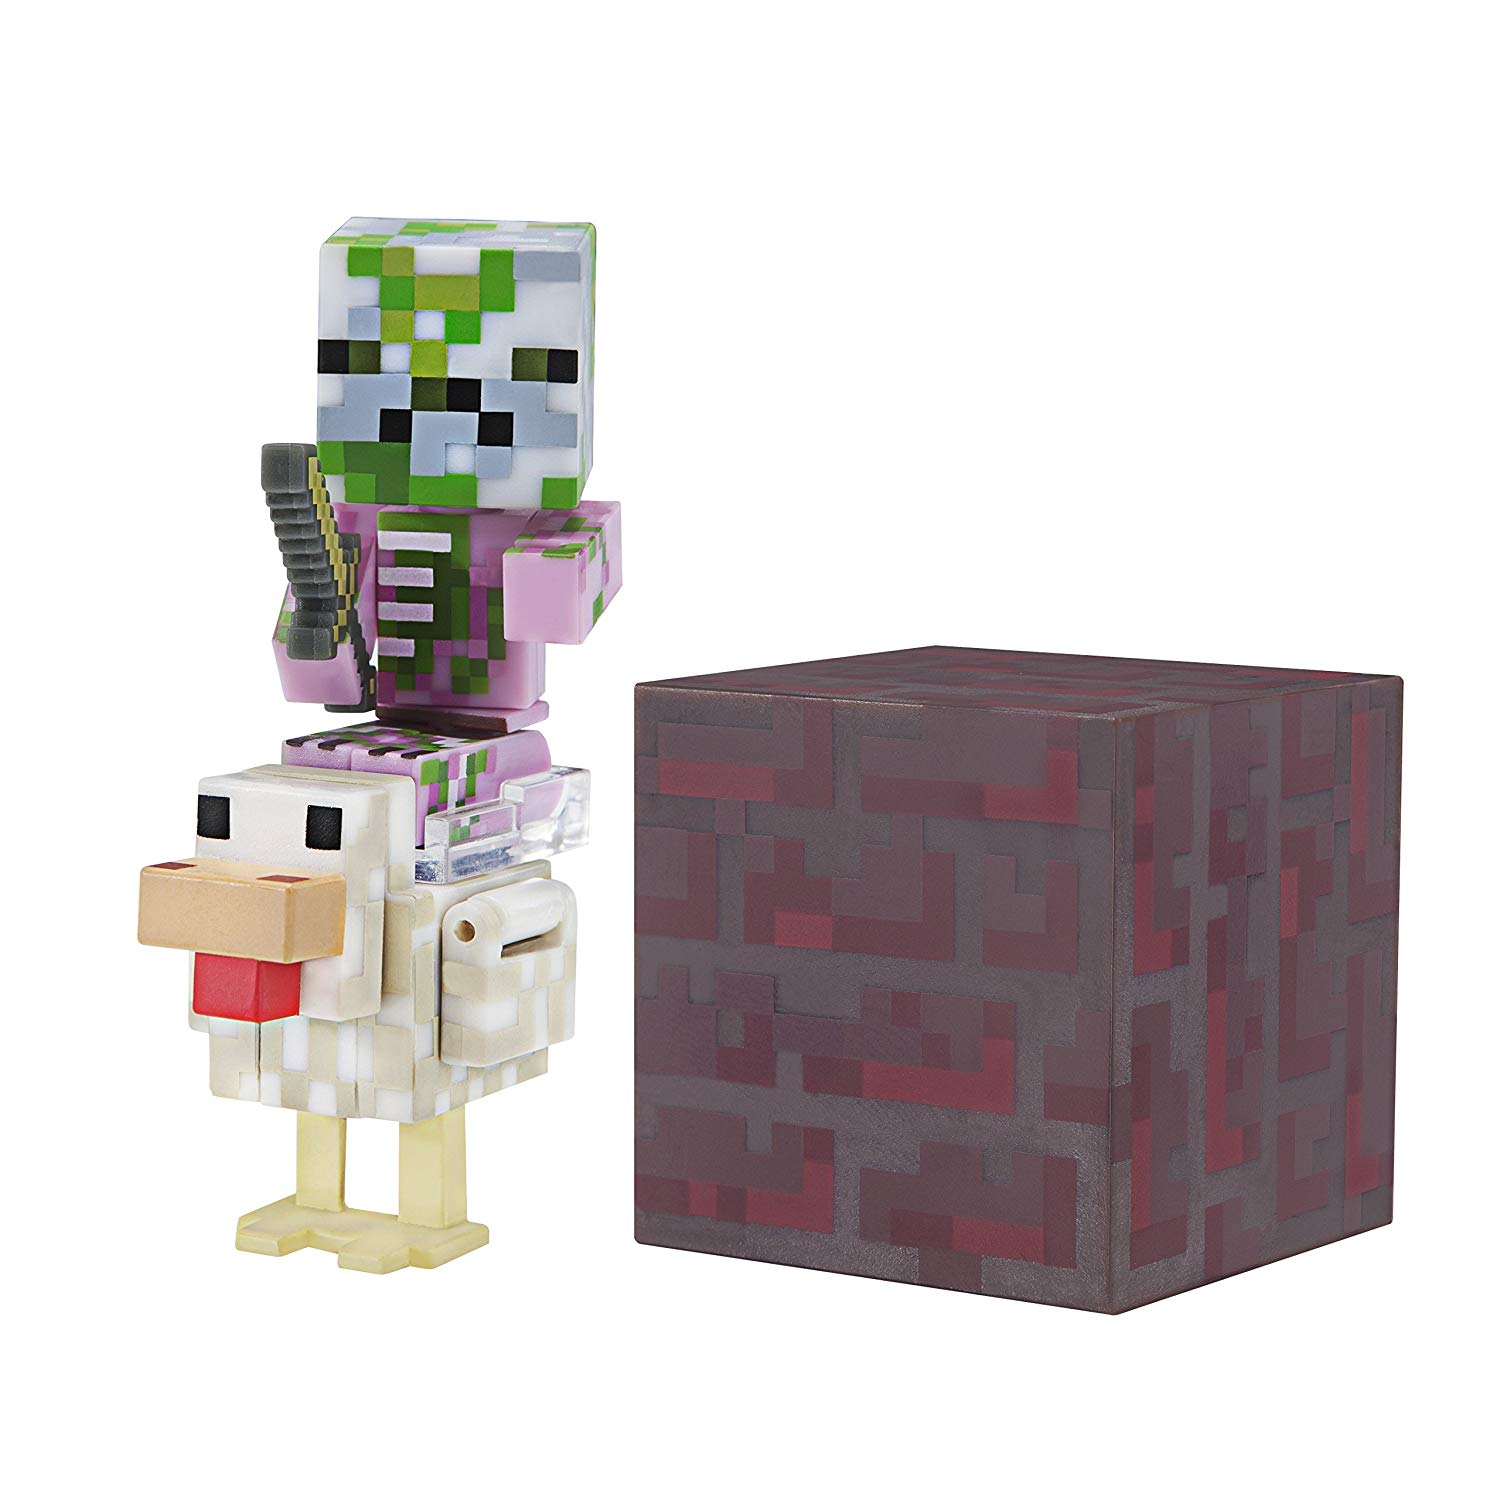 Фигурка из серии Minecraft - Pigman Jockey  